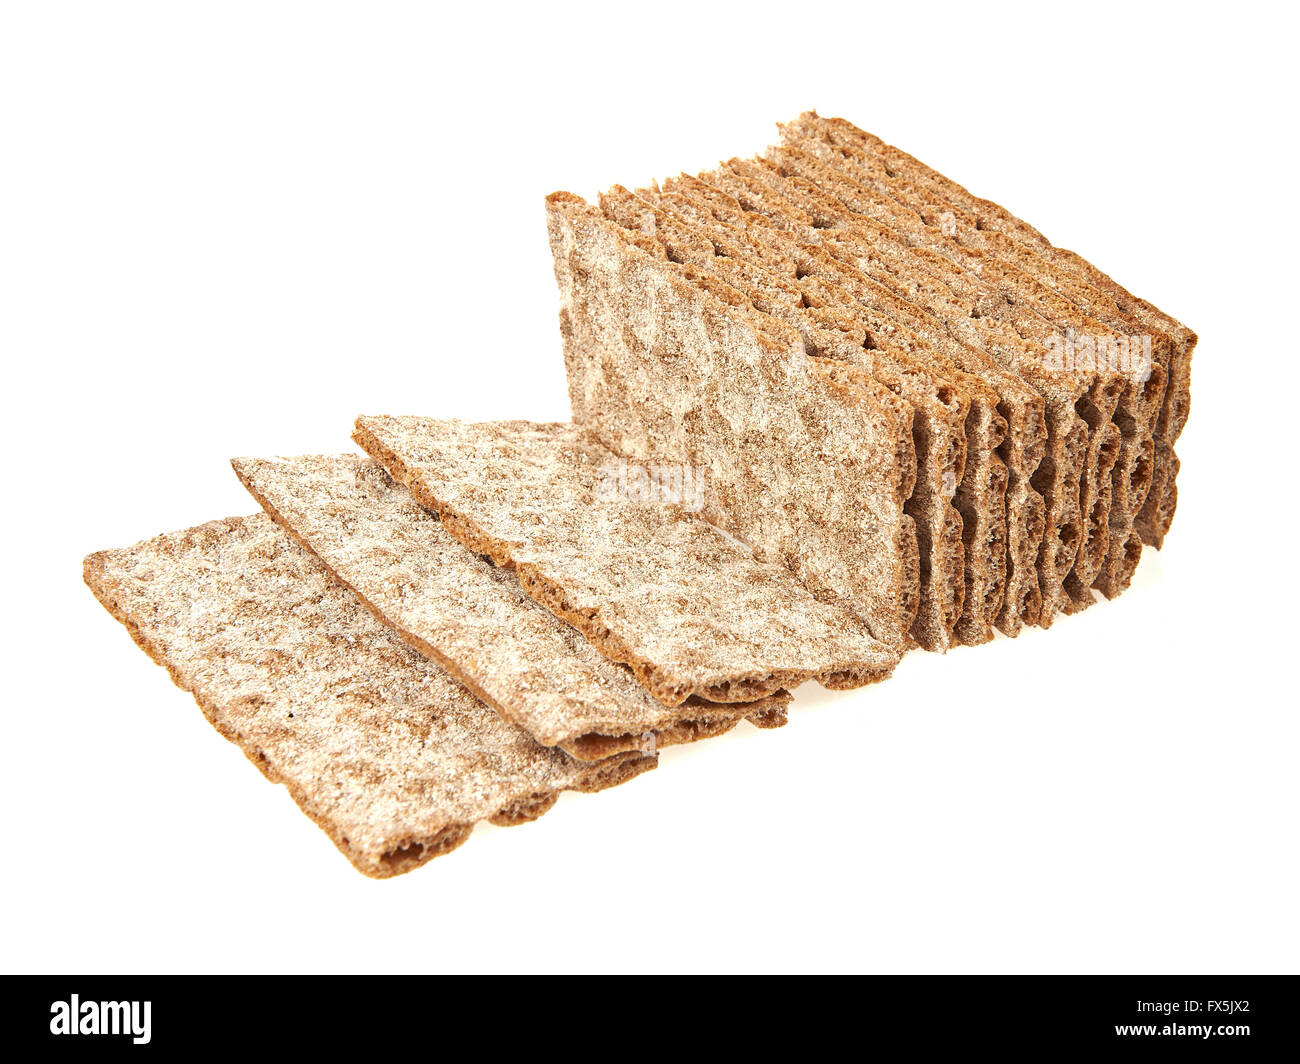 Pane fresco isolato su uno sfondo bianco Foto Stock